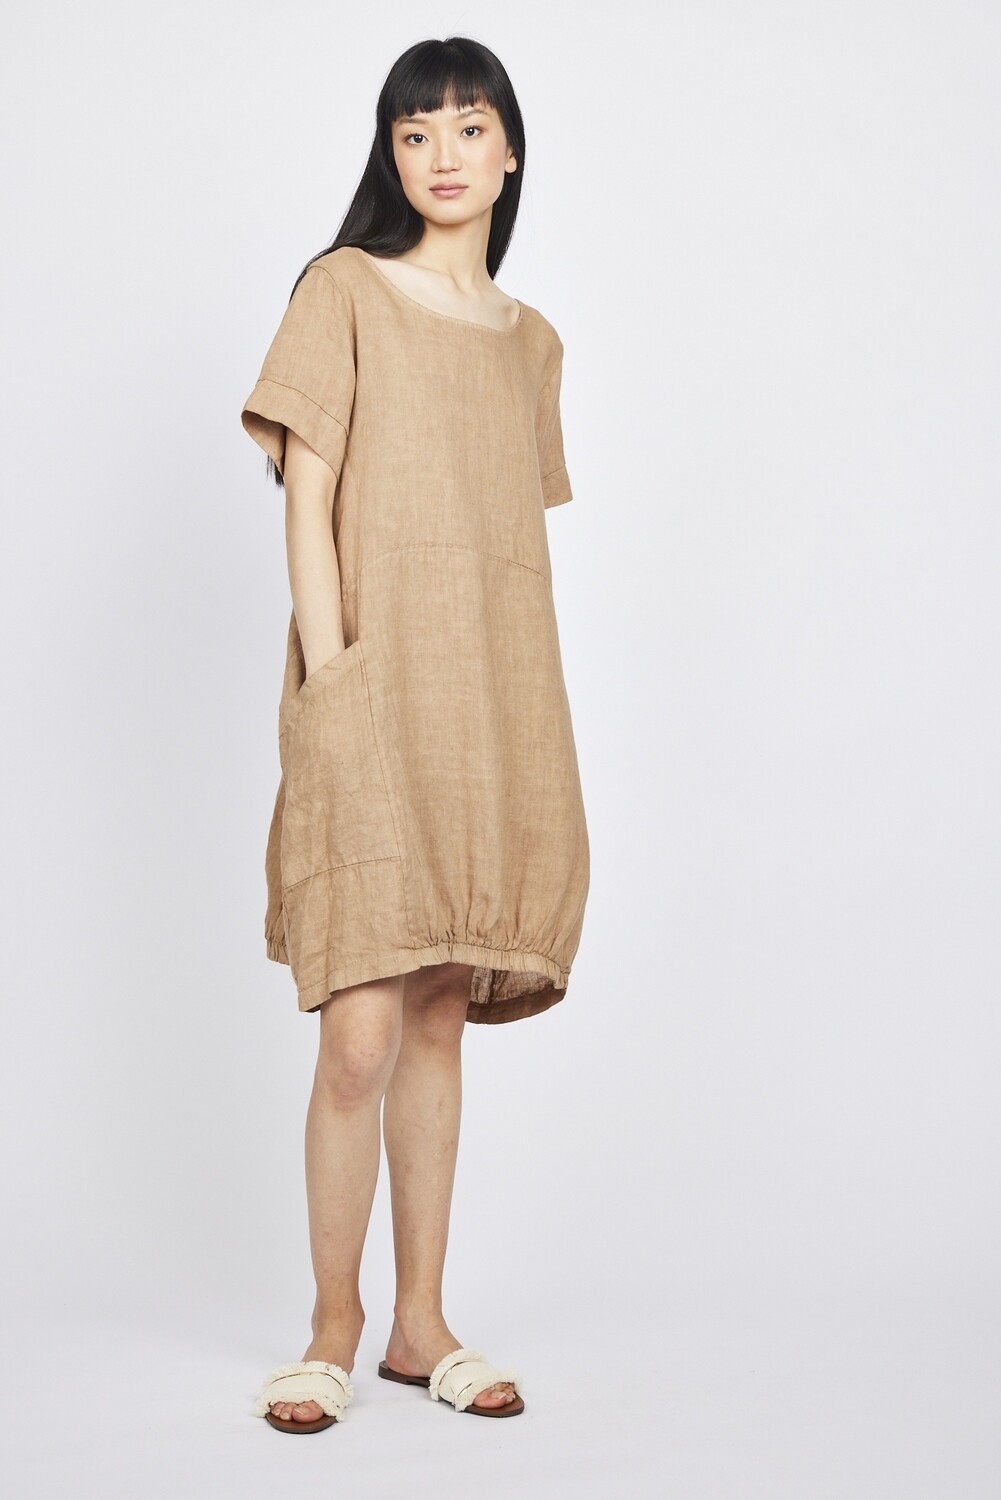 Pistache Short Sleeve Linen Dress Desert